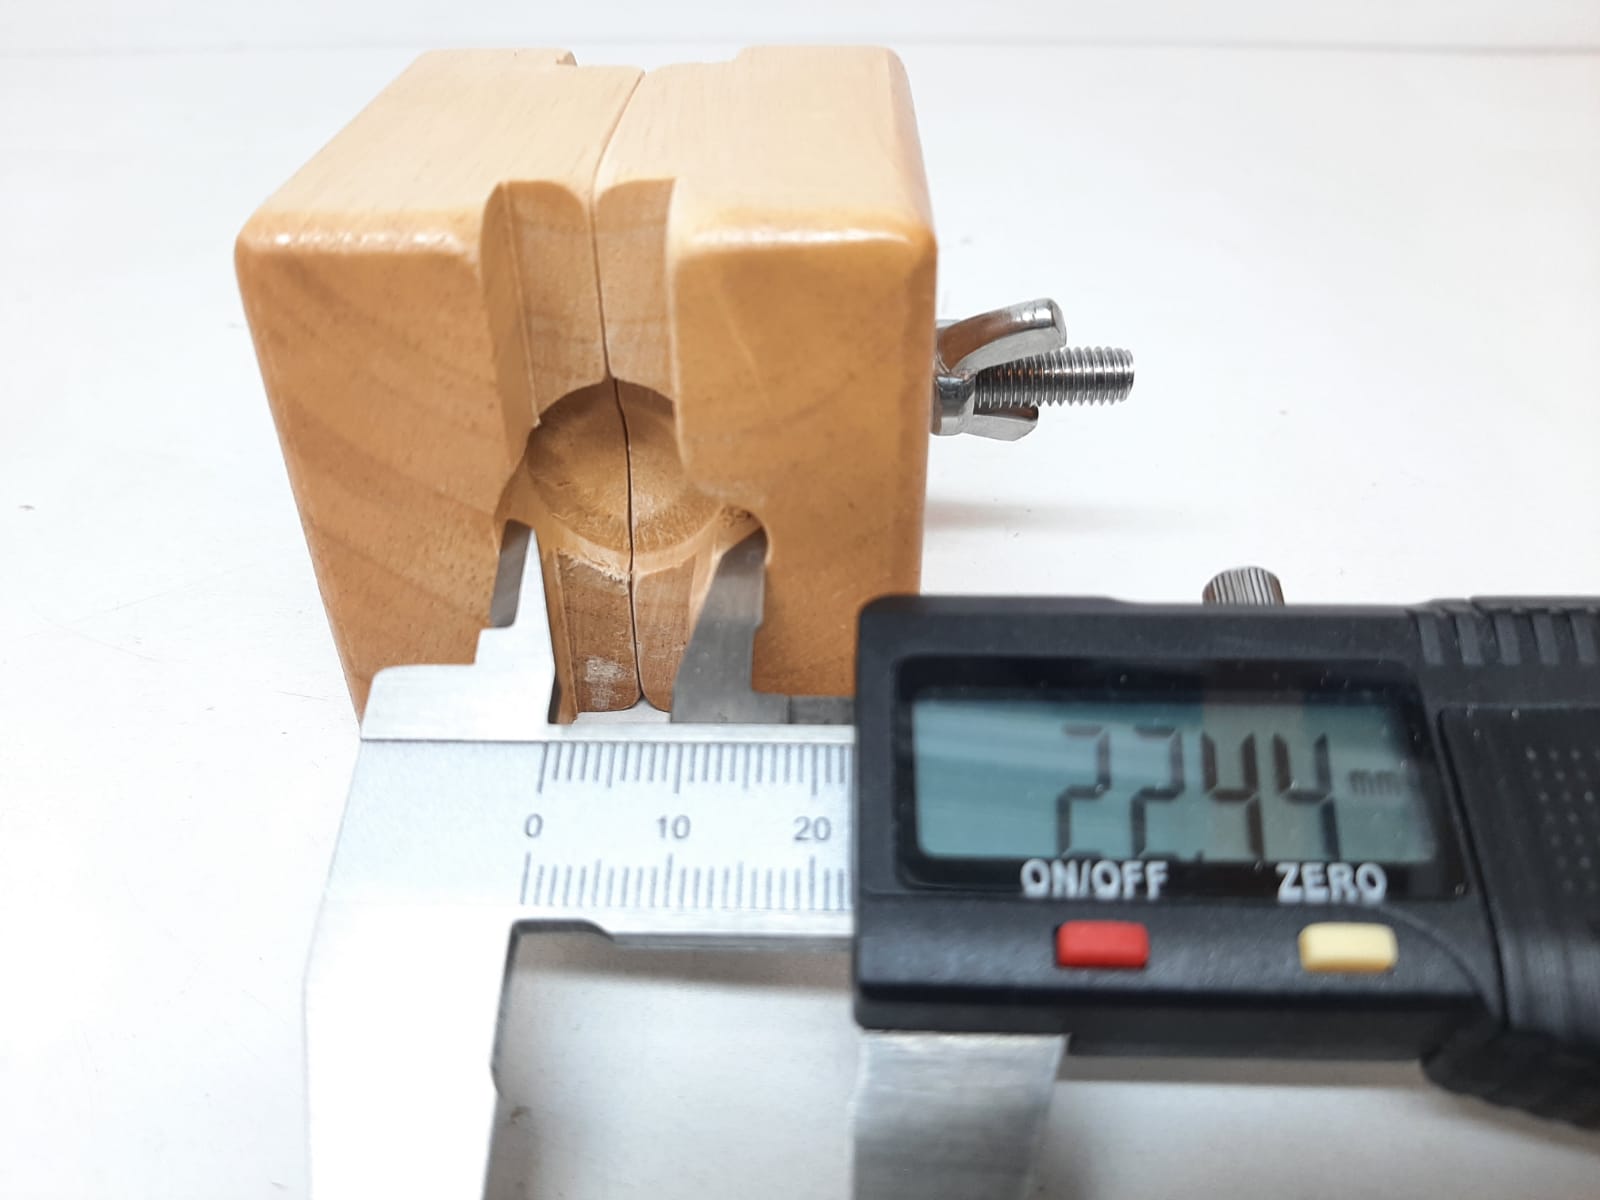 Klockhållare / Klämma i trä (Klocka/urmakeri verktyg)